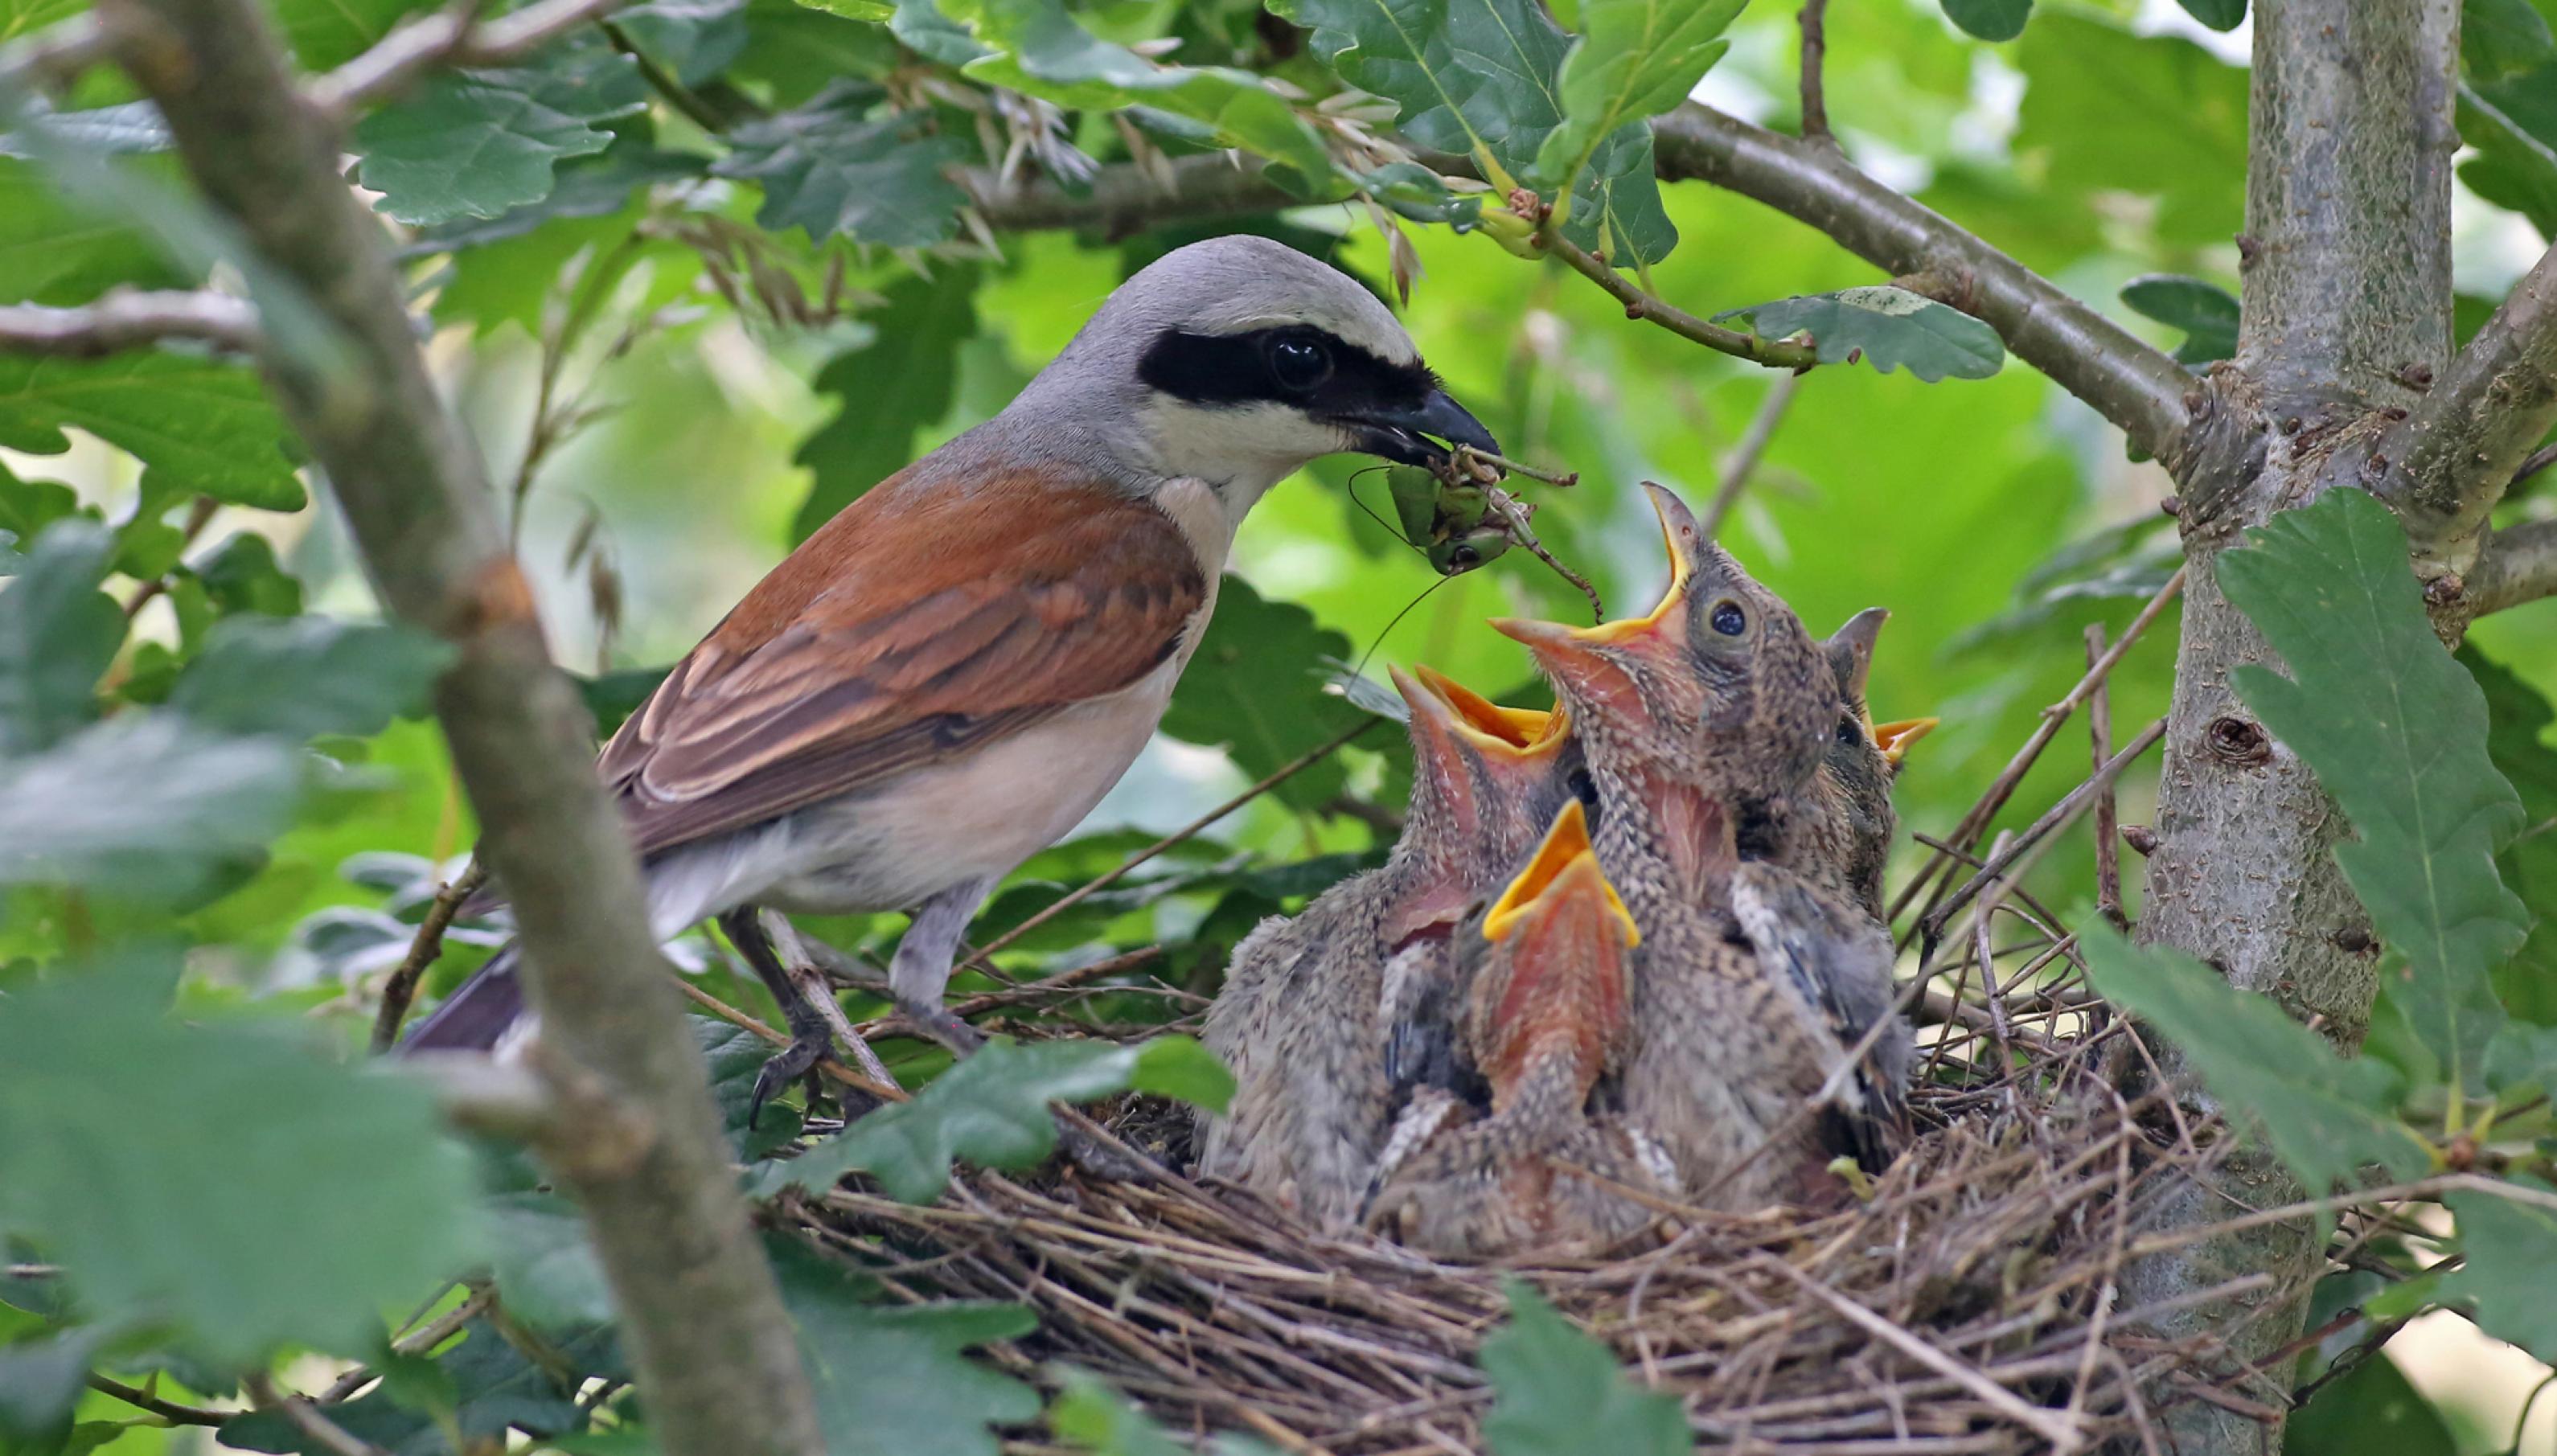 Neuntöter am Nest – aus störungsfreier Entfernung fotografiert. Vögel verhalten sich am Nest meist heimlich, denn jeder Besuch dort könnte auch einen Fressfeind anlocken.